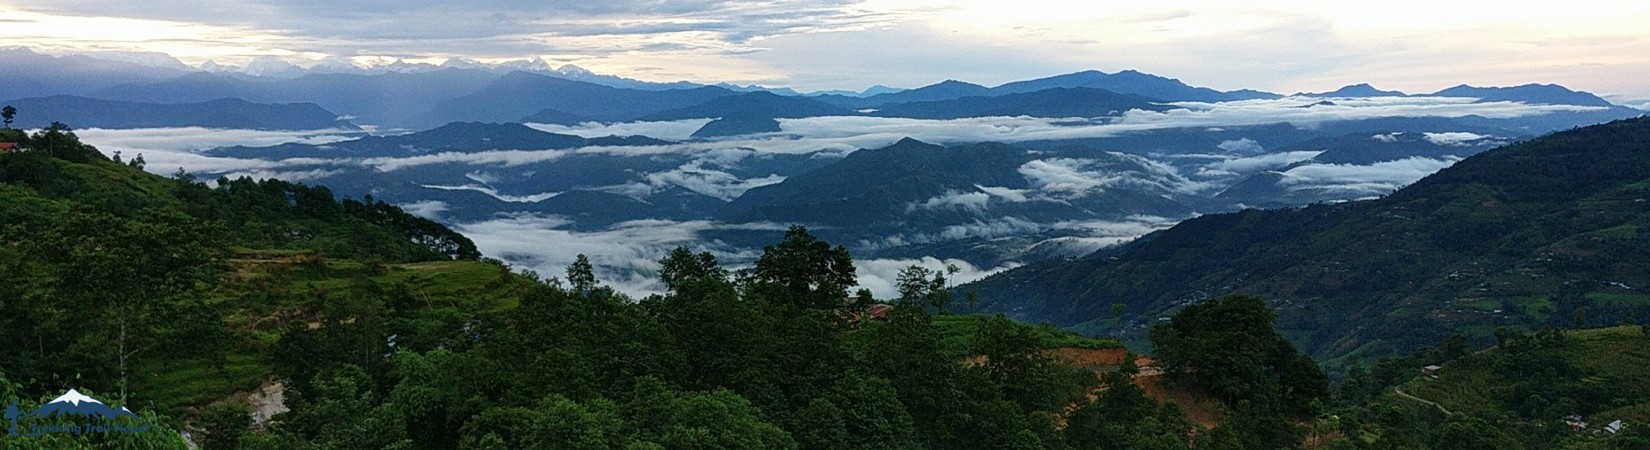 green view from kathmandu valley trek